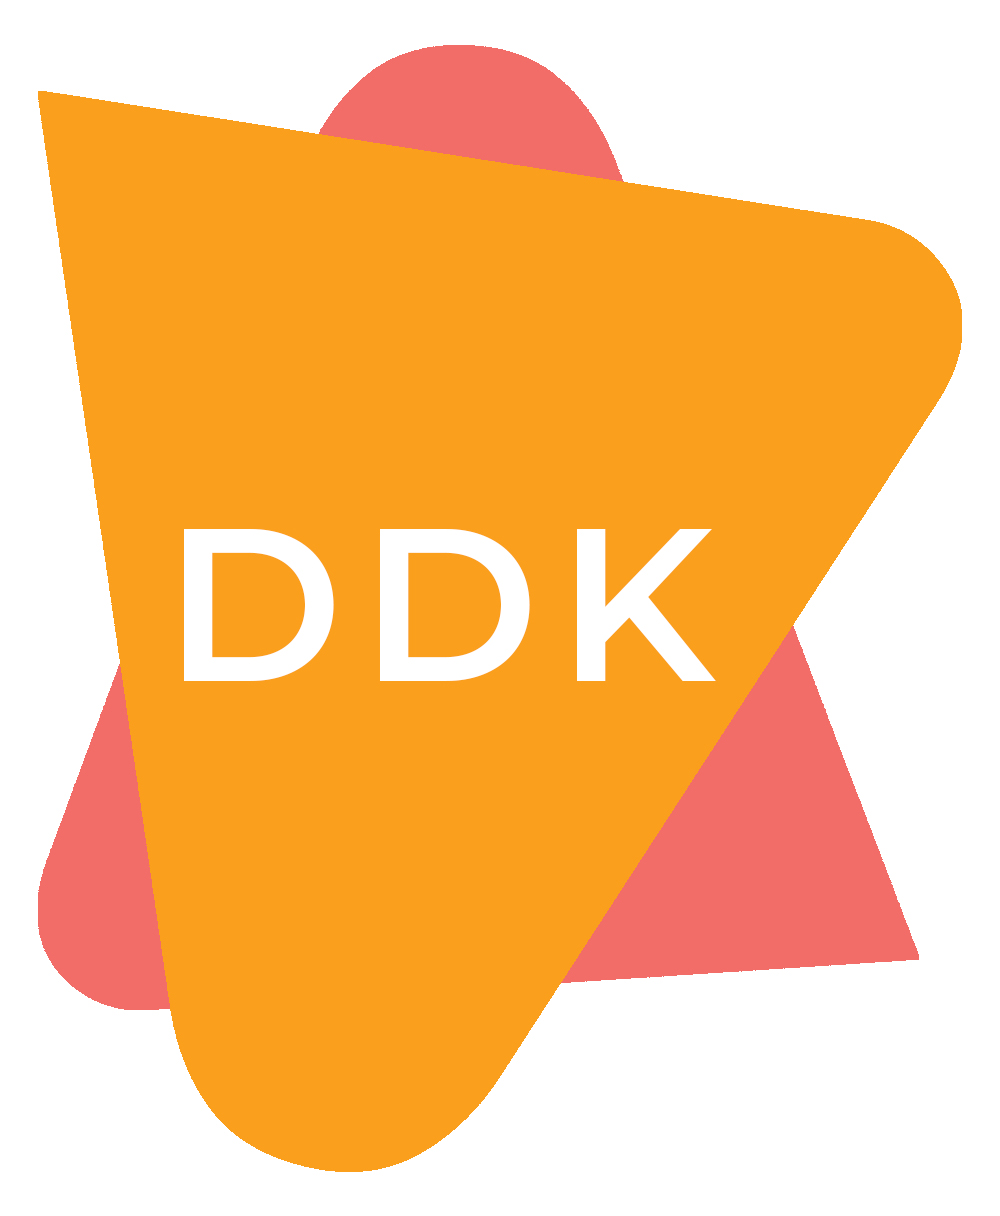 Initialen 'DDK' in een oranje driehoek